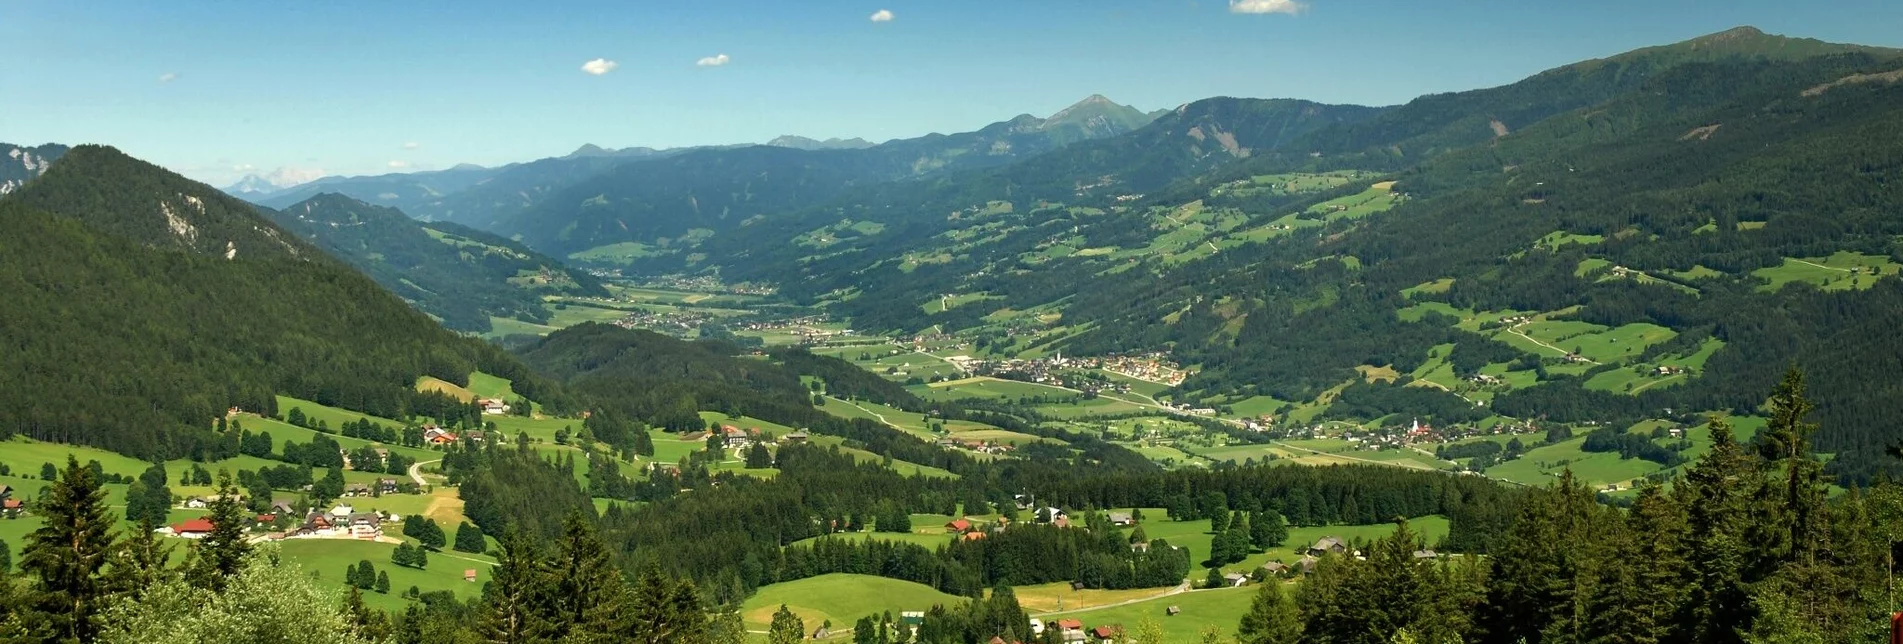 Hiking route Sattelberg Loop Trail - Touren-Impression #1 | © Erlebnisregion Schladming-Dachstein